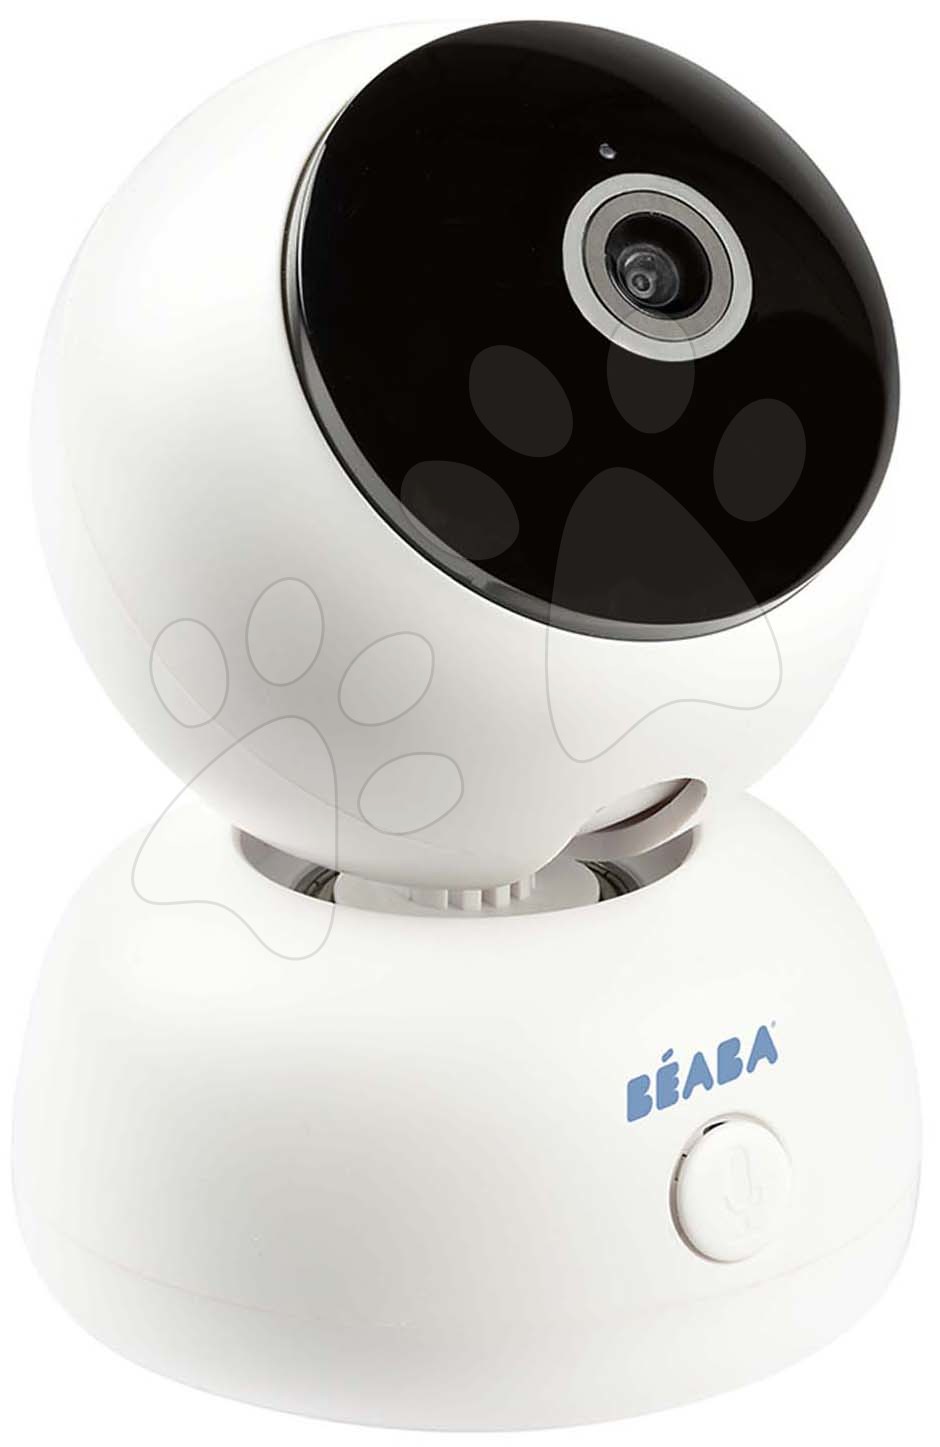 Pre bábätká - Elektronická opatrovateľka Video Baby Monitor Zen Premium Beaba 2v1 s 360 stupňovou rotáciou 1080 FULL HD s infračerveným nočným videním